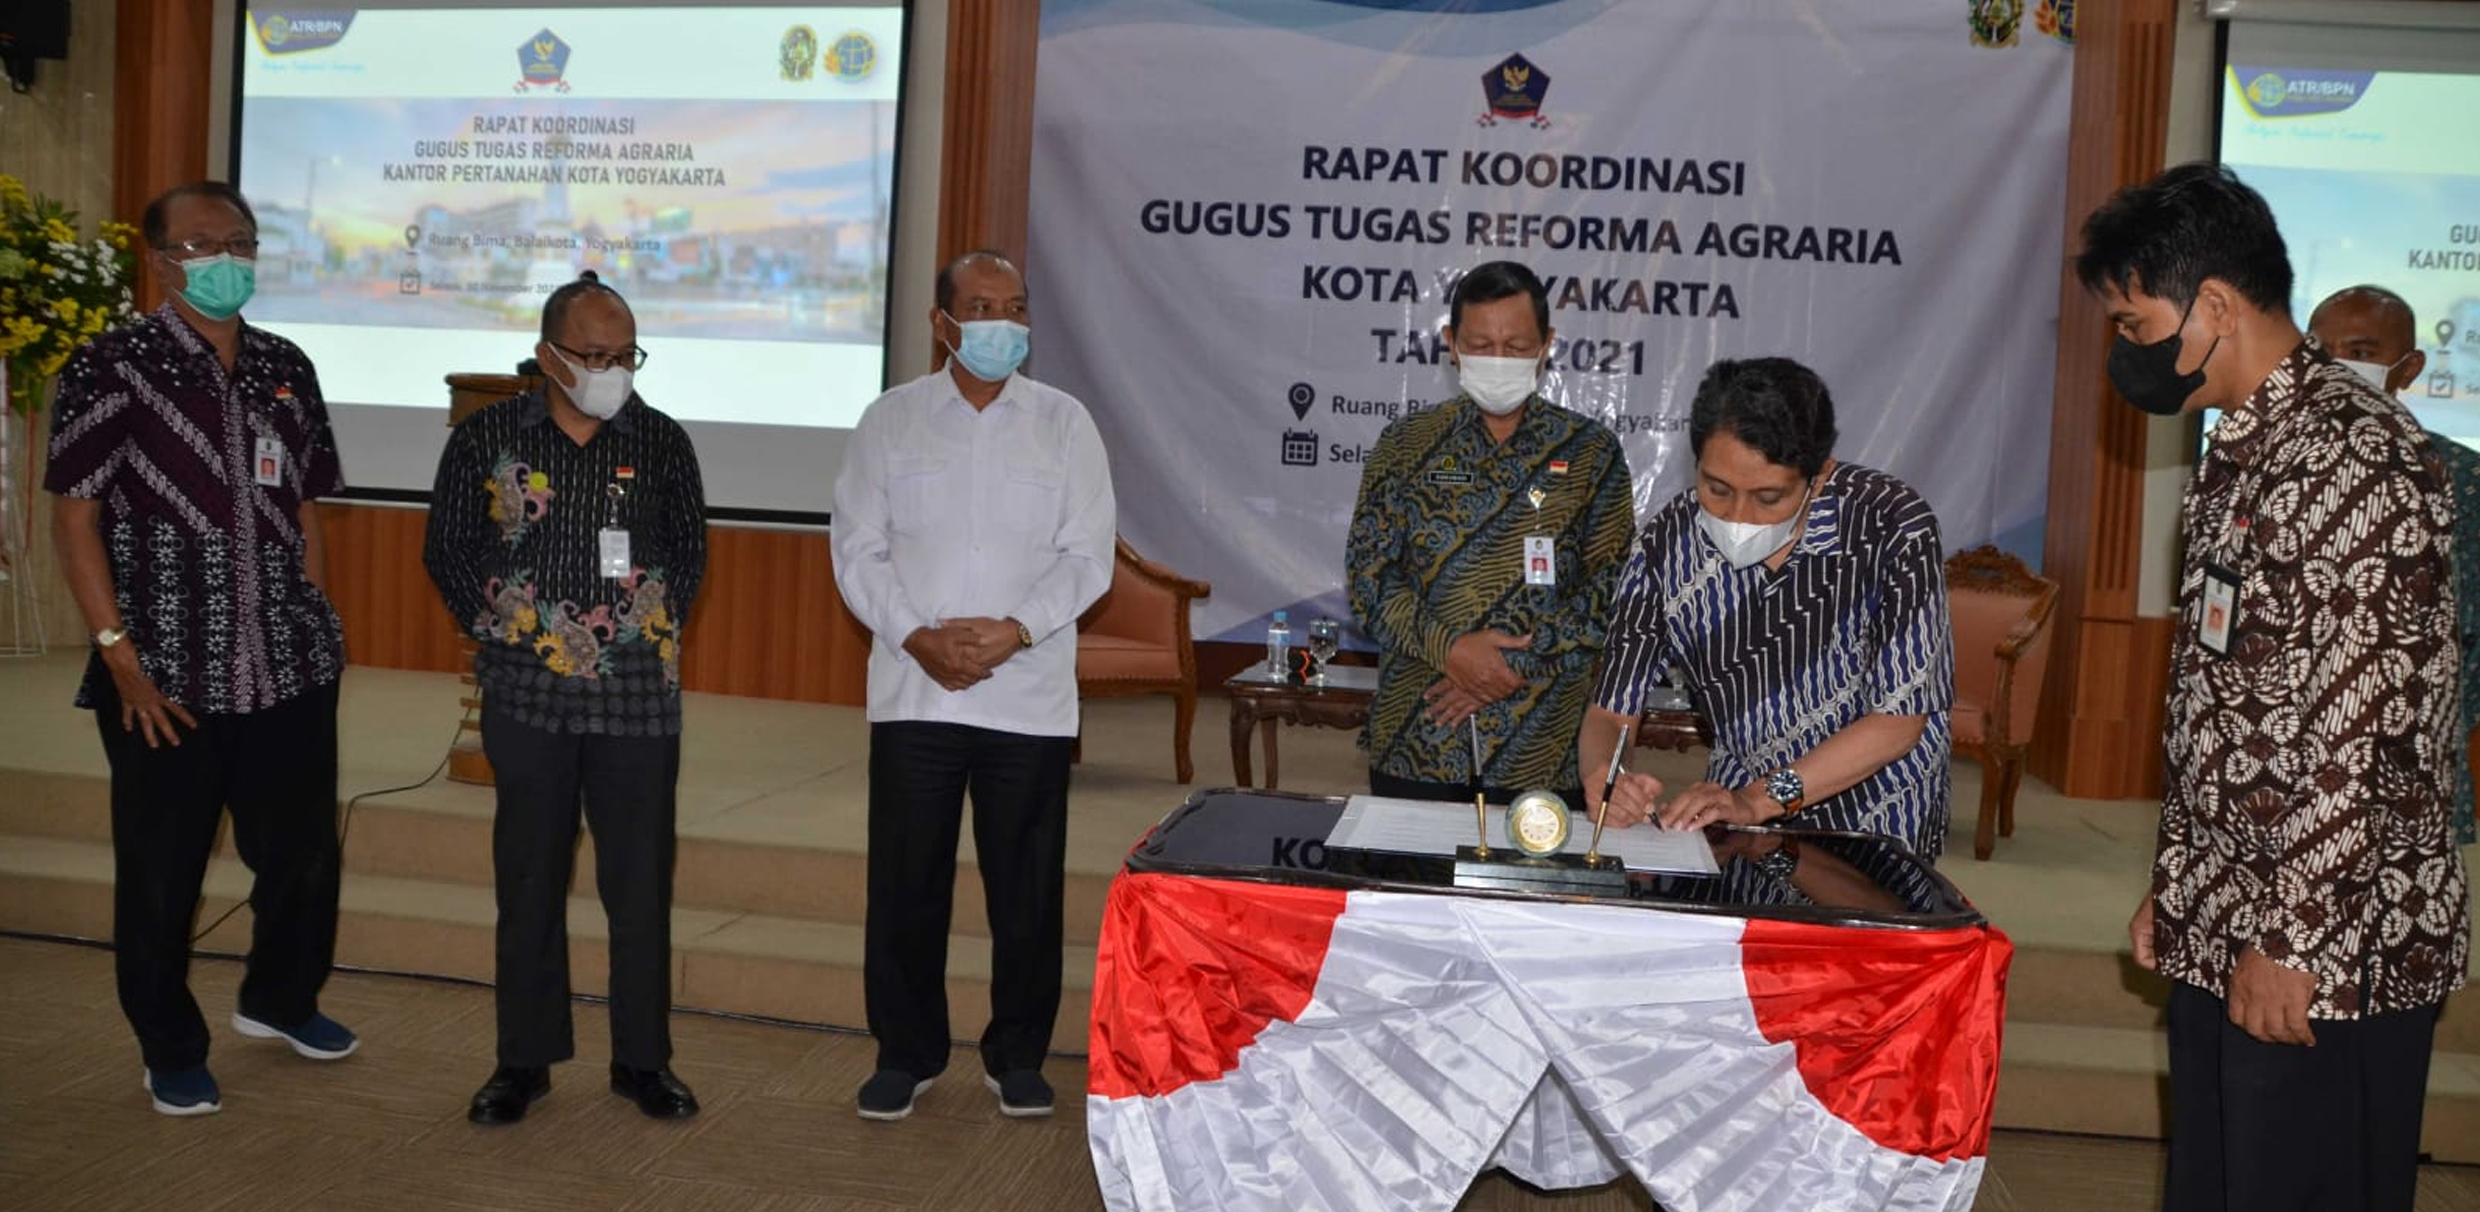 BPN Realisasikan Reforma Agraria Tahun 2021 Bersama Pemkot Yogyakarta